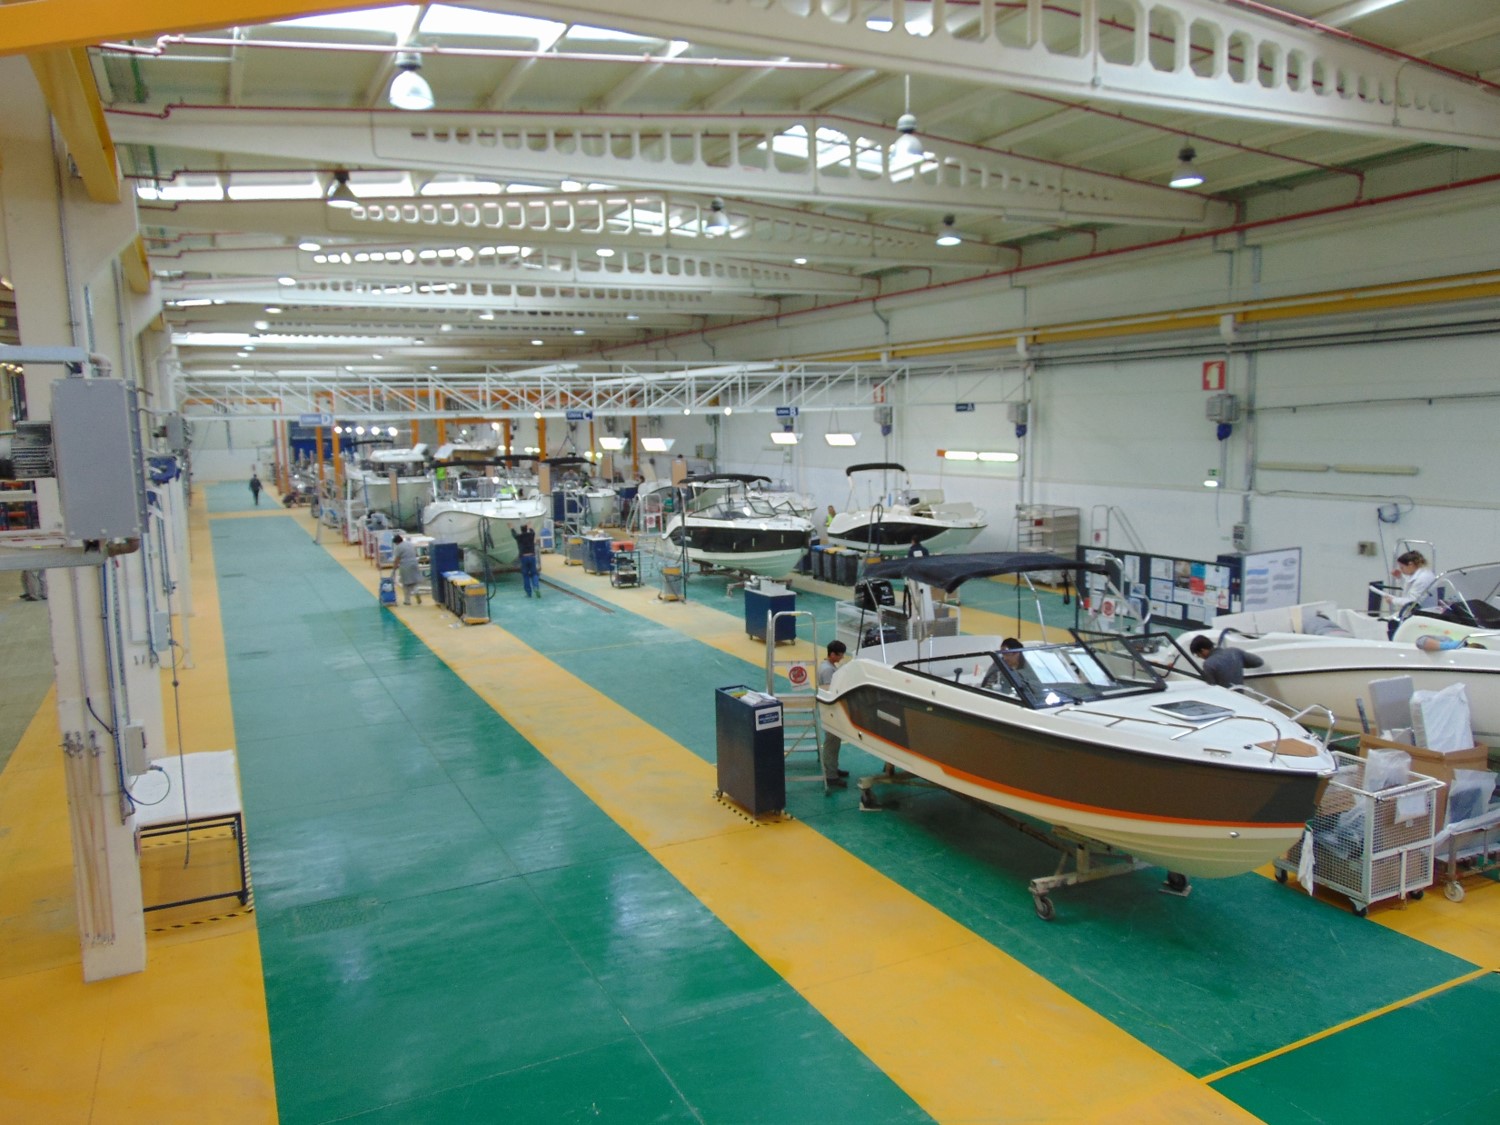 brunswick amplia la capacidad de fabricación de embarcaciones en las instalaciones de vila nova de cerveira, portugal